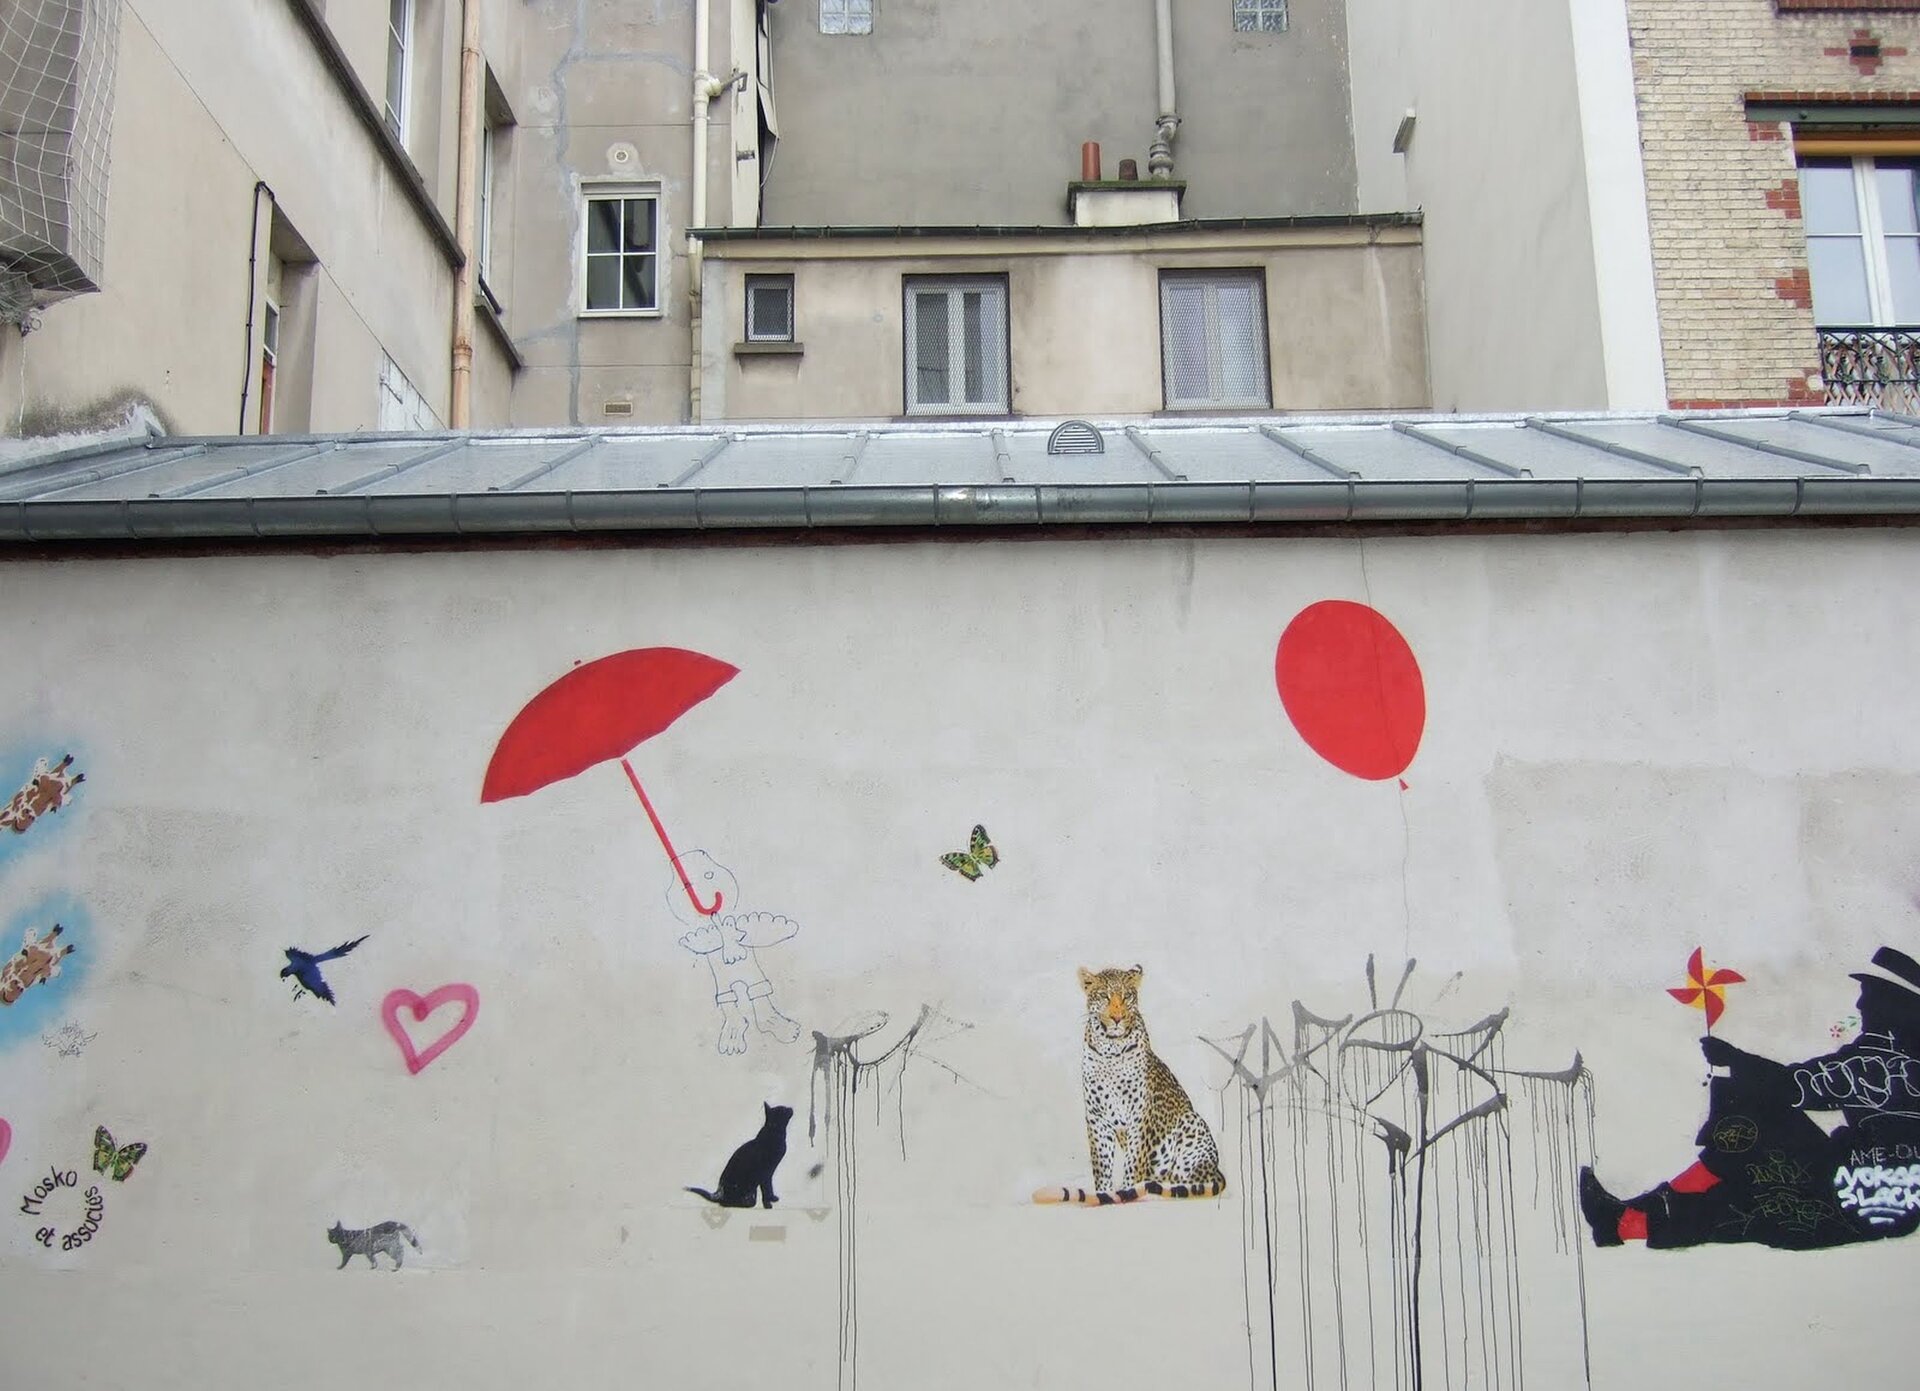 Ilustracja przestawia mural Mosko et Associes. Ukazuje namalowane na ścianie, swobodnie rozmieszczone: czerwone parasol i balon, czarnego kota, tygrysa, ptaki, motyla i siedzącego mężczyznę. Za murem znajdują sie budynki.